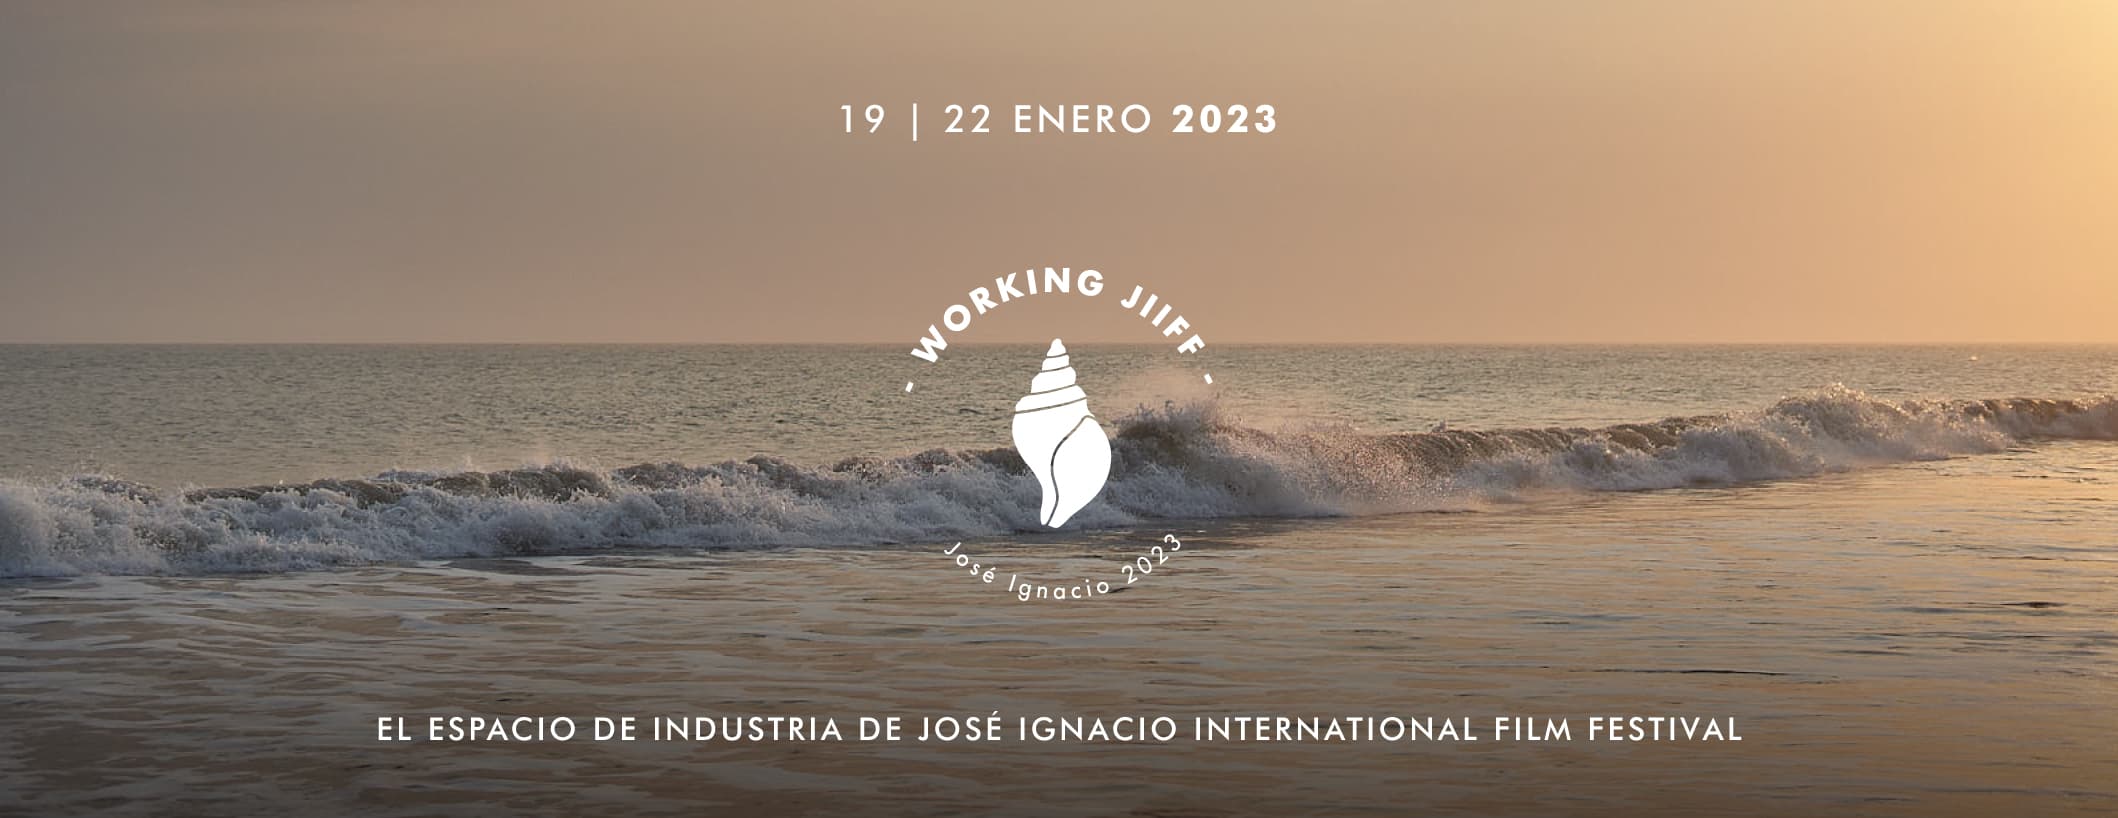 Working JIIFF 2023 - 19 al 22 de enero. Bajada: El espacio de industria de José Ignacio International Film Festival